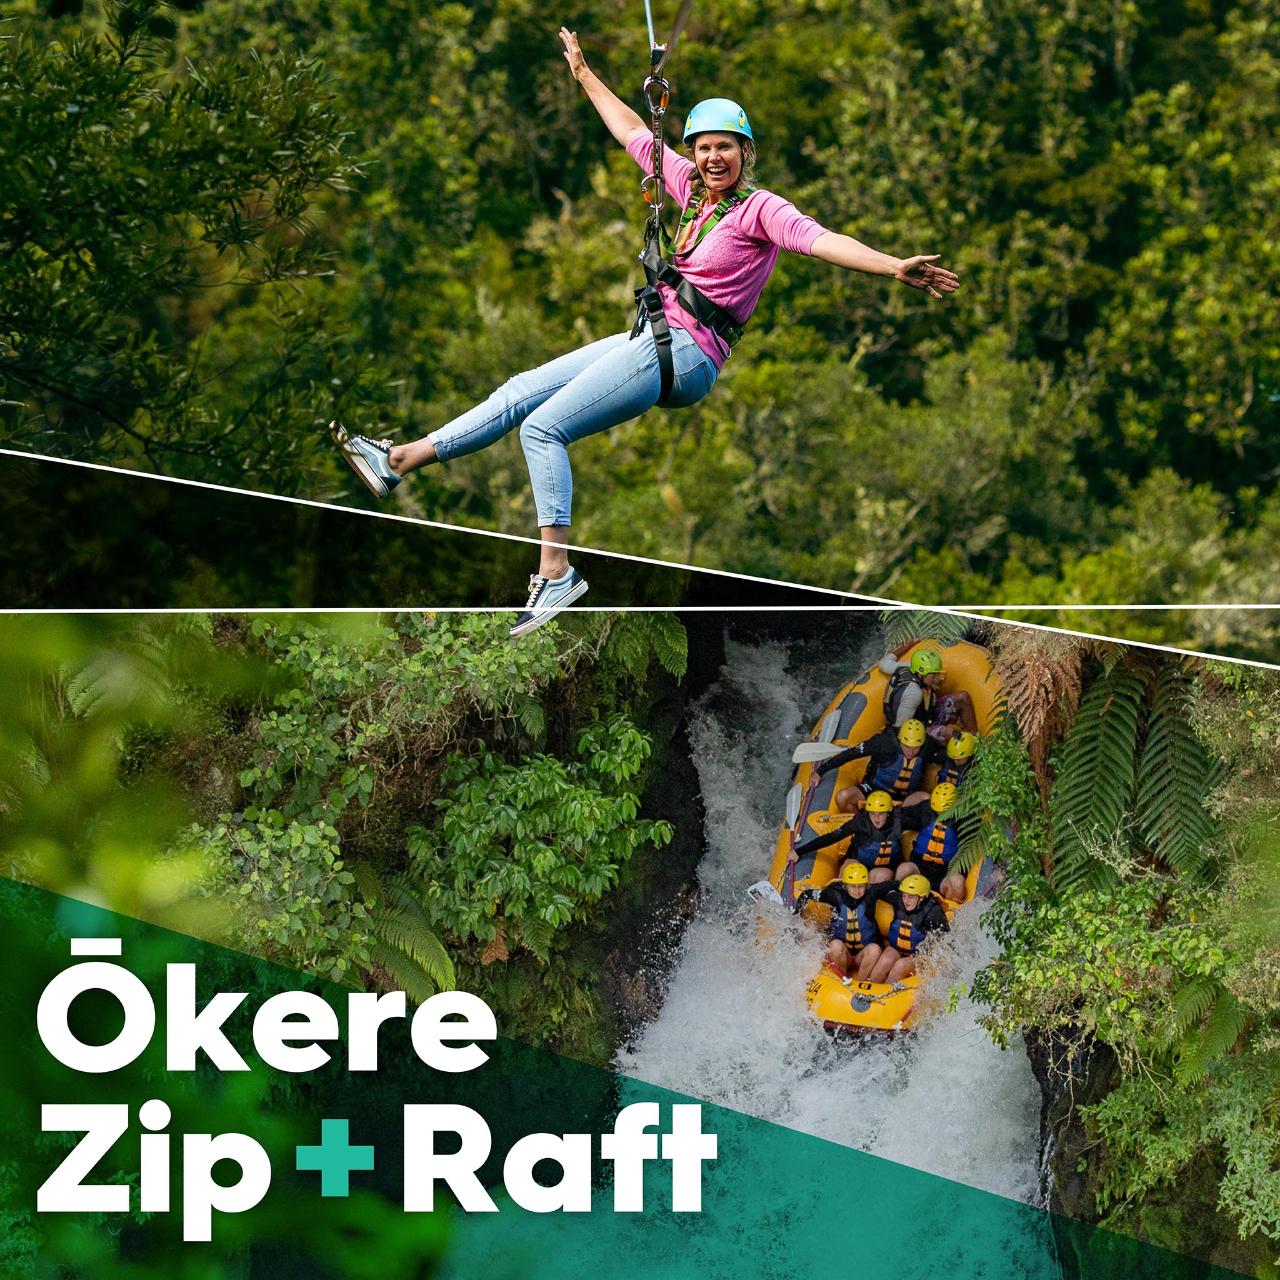 Ōkere Zip + Raft